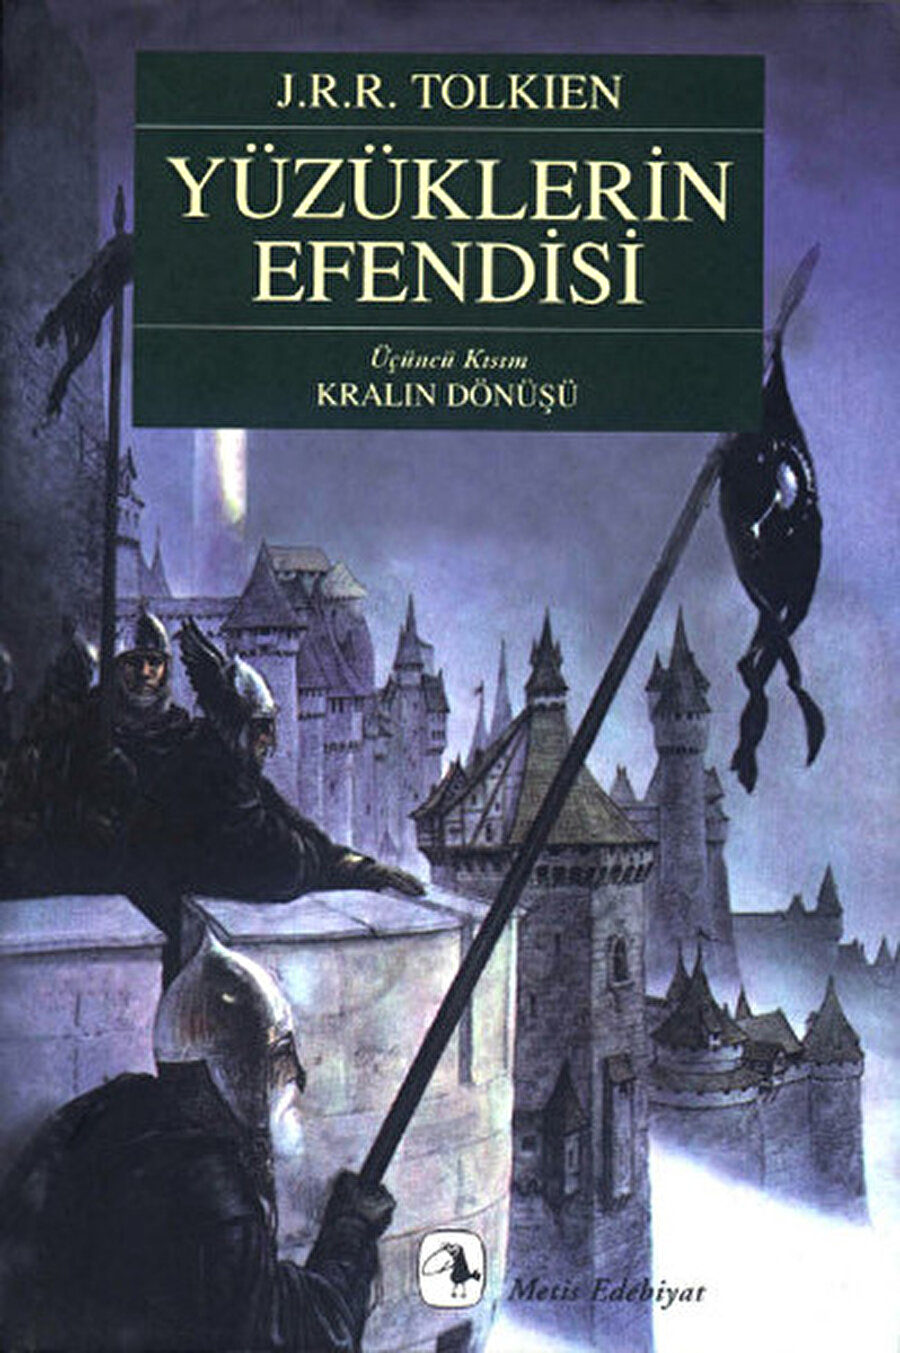 Yüzüklerin Efendisi: Kralın Dönüşü

                                    
                                    Büyük yazar J. R. R. Tolkien'in 1955'te yayımladığı kitapta Karanlıklar efendisi ile Yüzük Kardeşliği karşı karşıya gelirler. Sam ve Frodo herkese hükmedebilecek güçte olan Tek Yüzükle karanlığın kalbi olan Mordor'un içine yolculuk yaparlar. Tüm dünyada kendine hayran kitlesi oluşturmayı başarmış Yüzüklerin Efendisi serisinin üçüncü kitabı olan Kralın Dönüşü bugüne kadar tam 140 milyon adet satmıştır. 

                                
                                